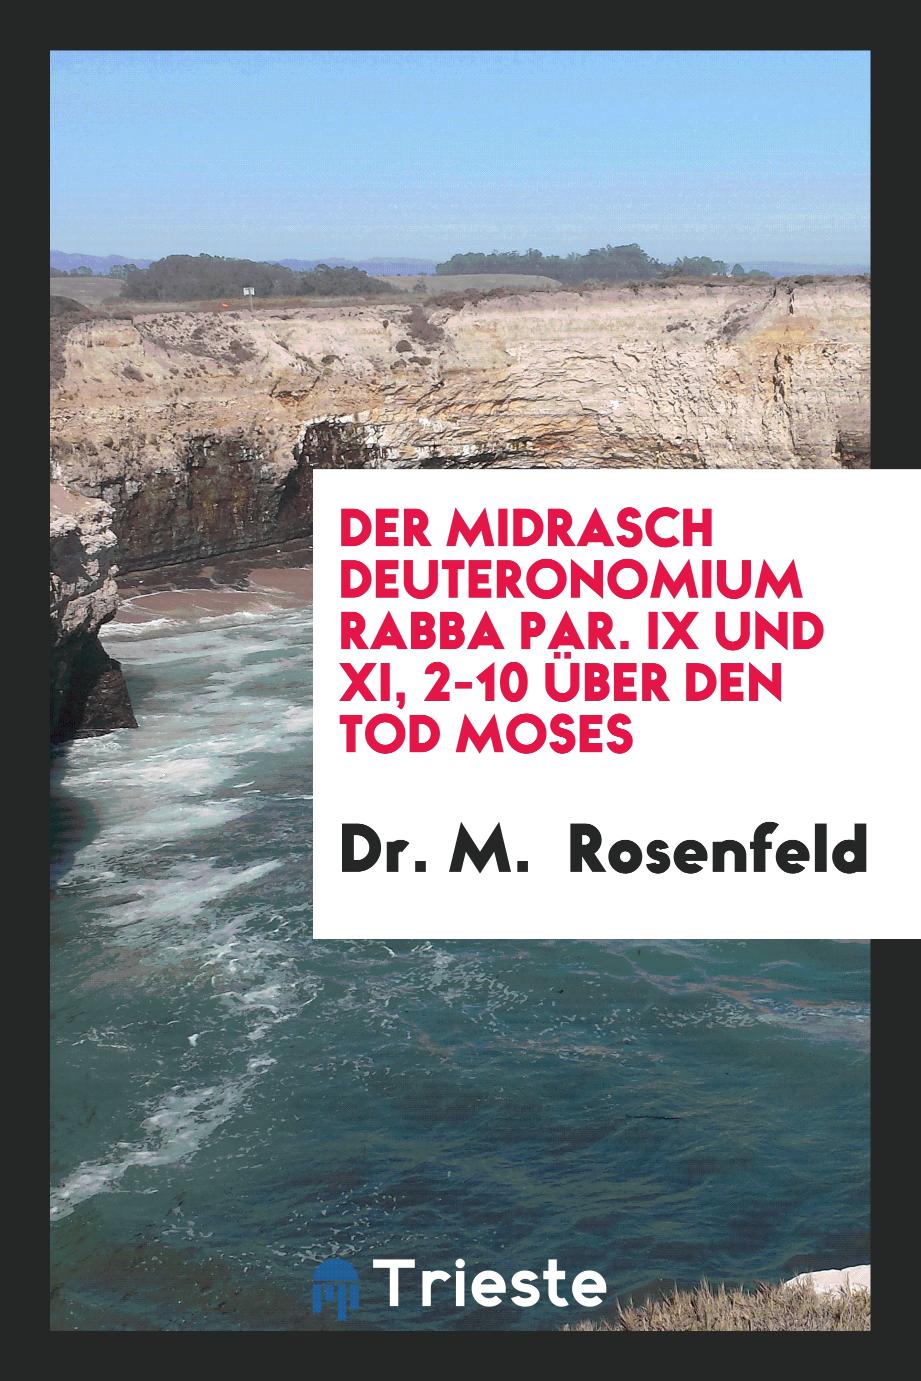 Der Midrasch Deuteronomium Rabba Par. IX und XI, 2-10 über den Tod Moses